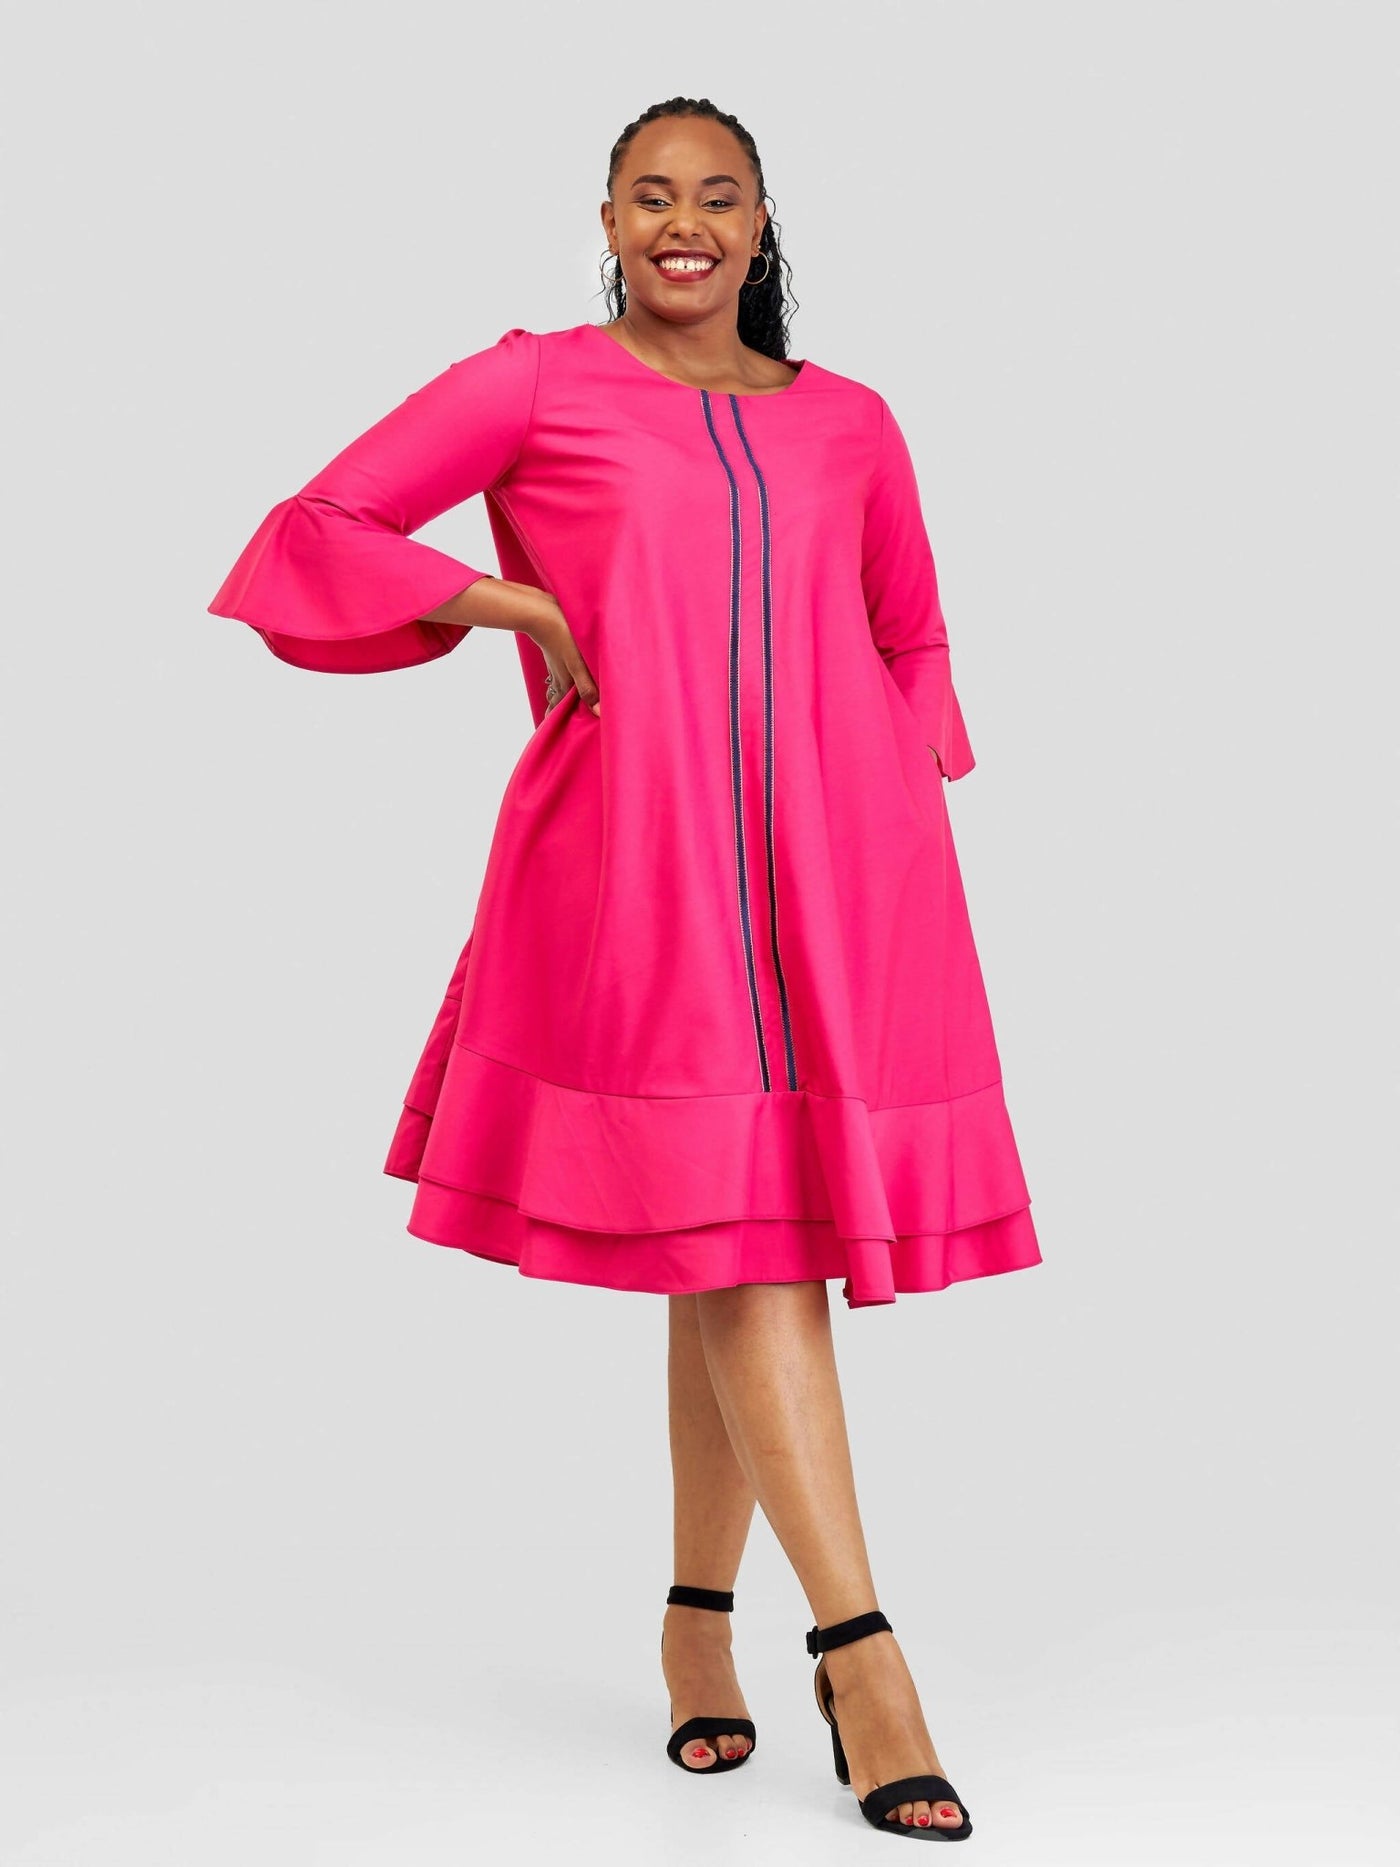 Jolly Fancy Wear Princess Tier Shift Dress - Pink - Shopzetu